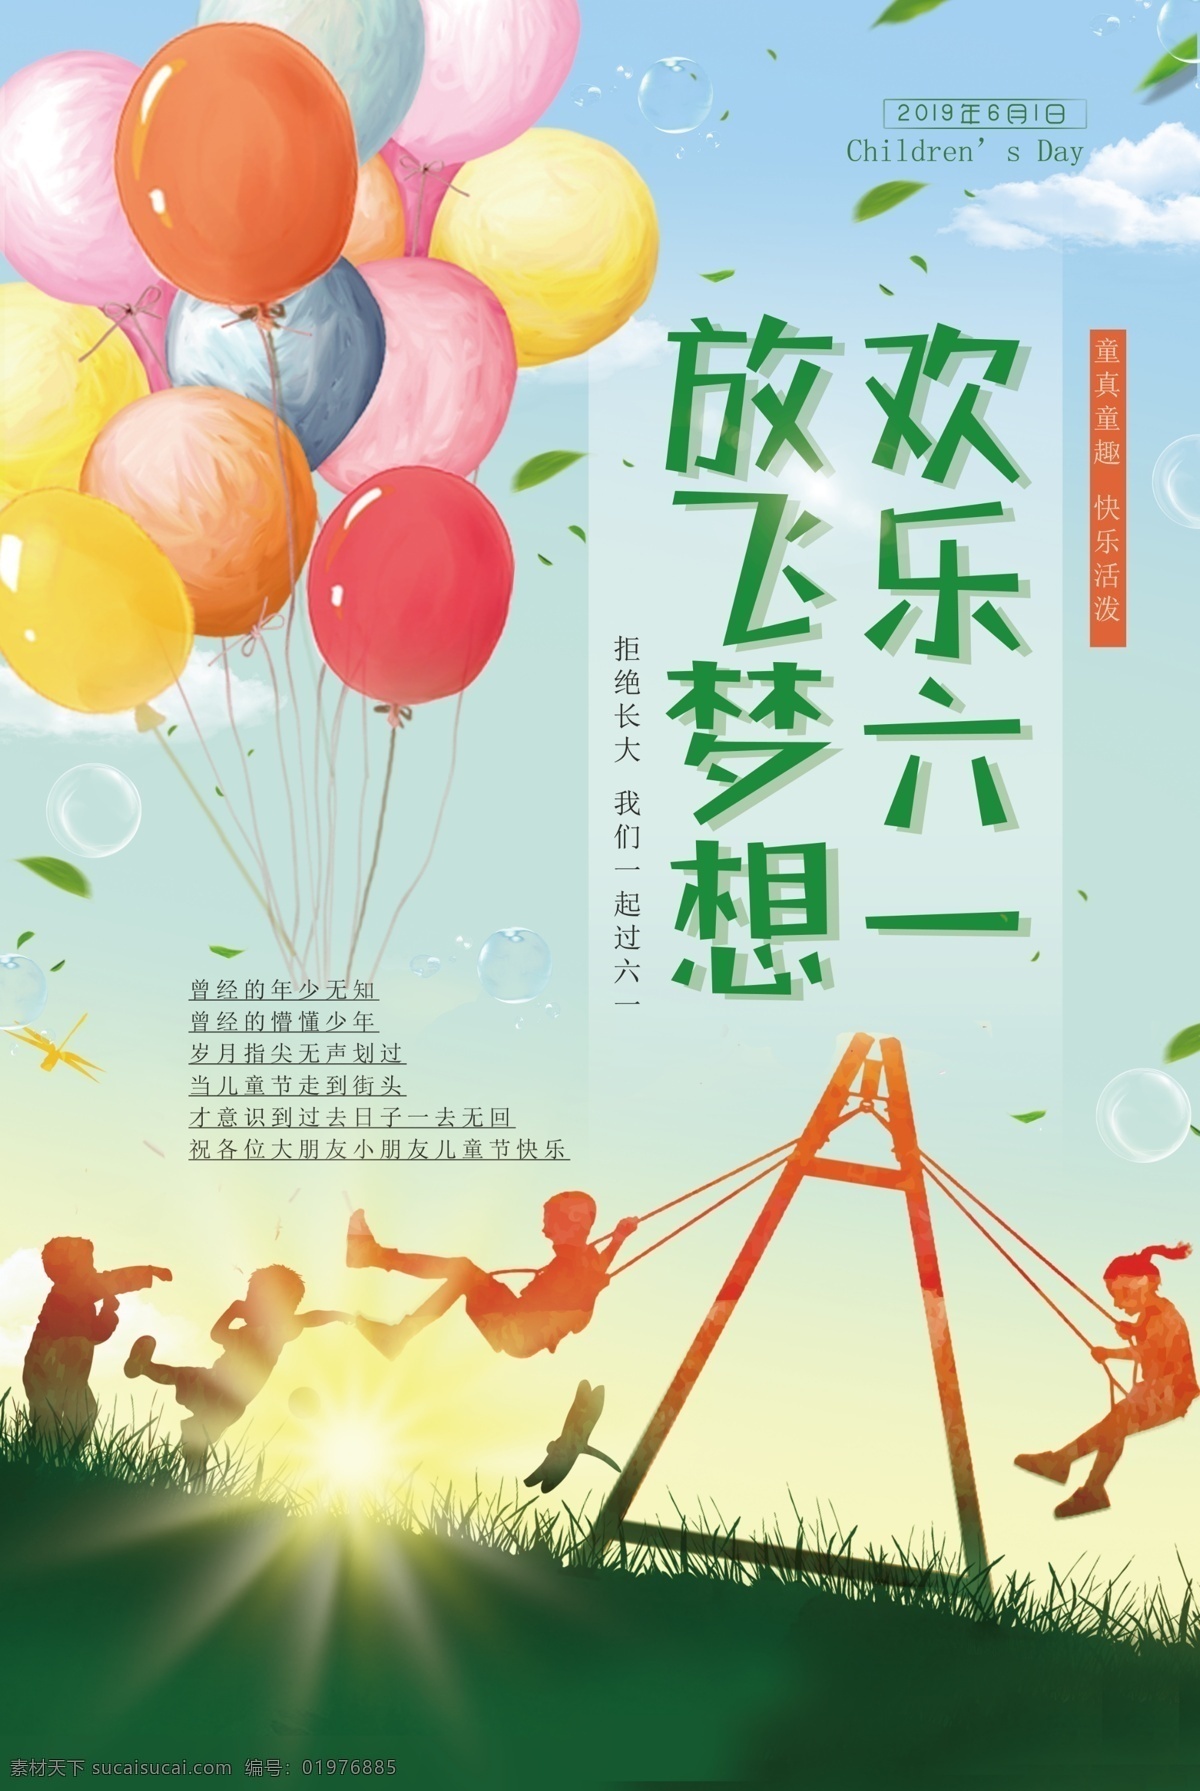 六 放飞 梦想 海报 六一 儿童节 气球 荡秋千 简约大气 绿色背景 放飞梦想海报